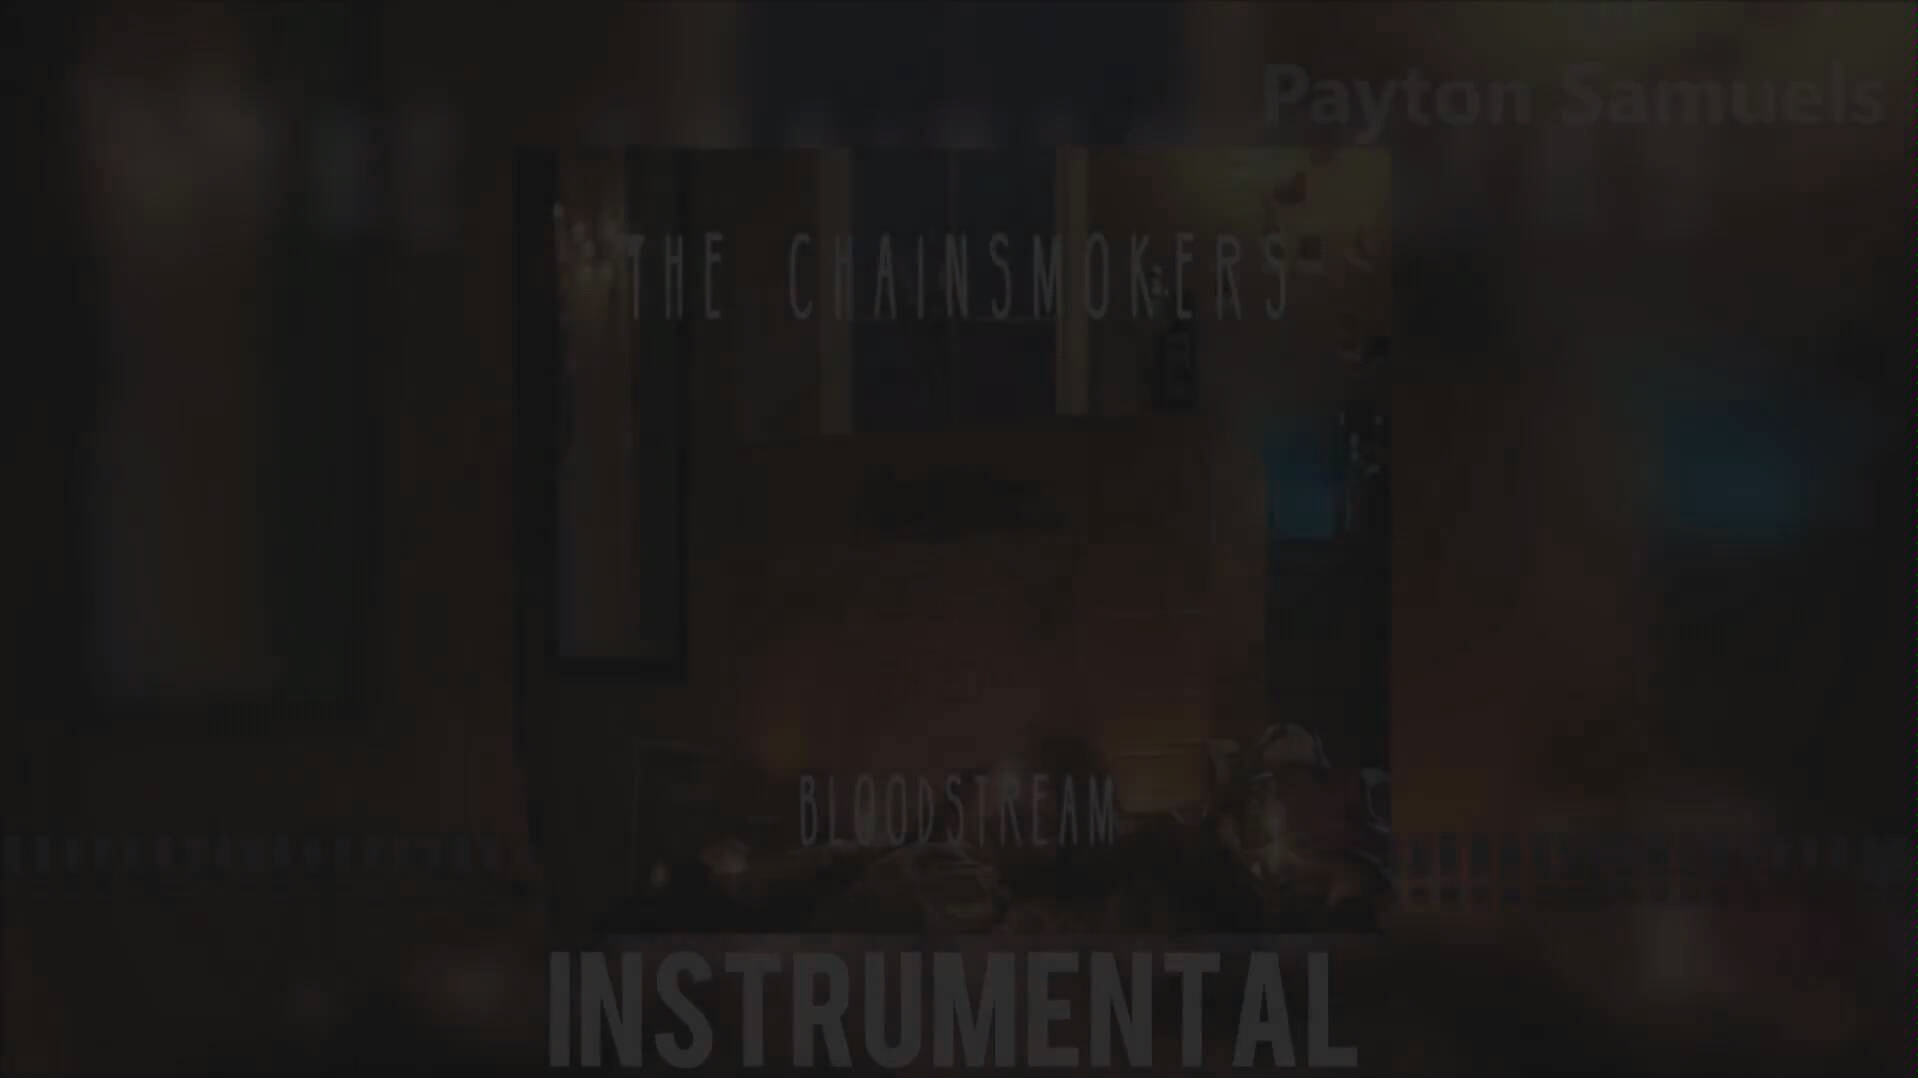 dinastía suave paracaídas The Chainsmokers - Bloodstream (Instrumental)-哔哩哔哩